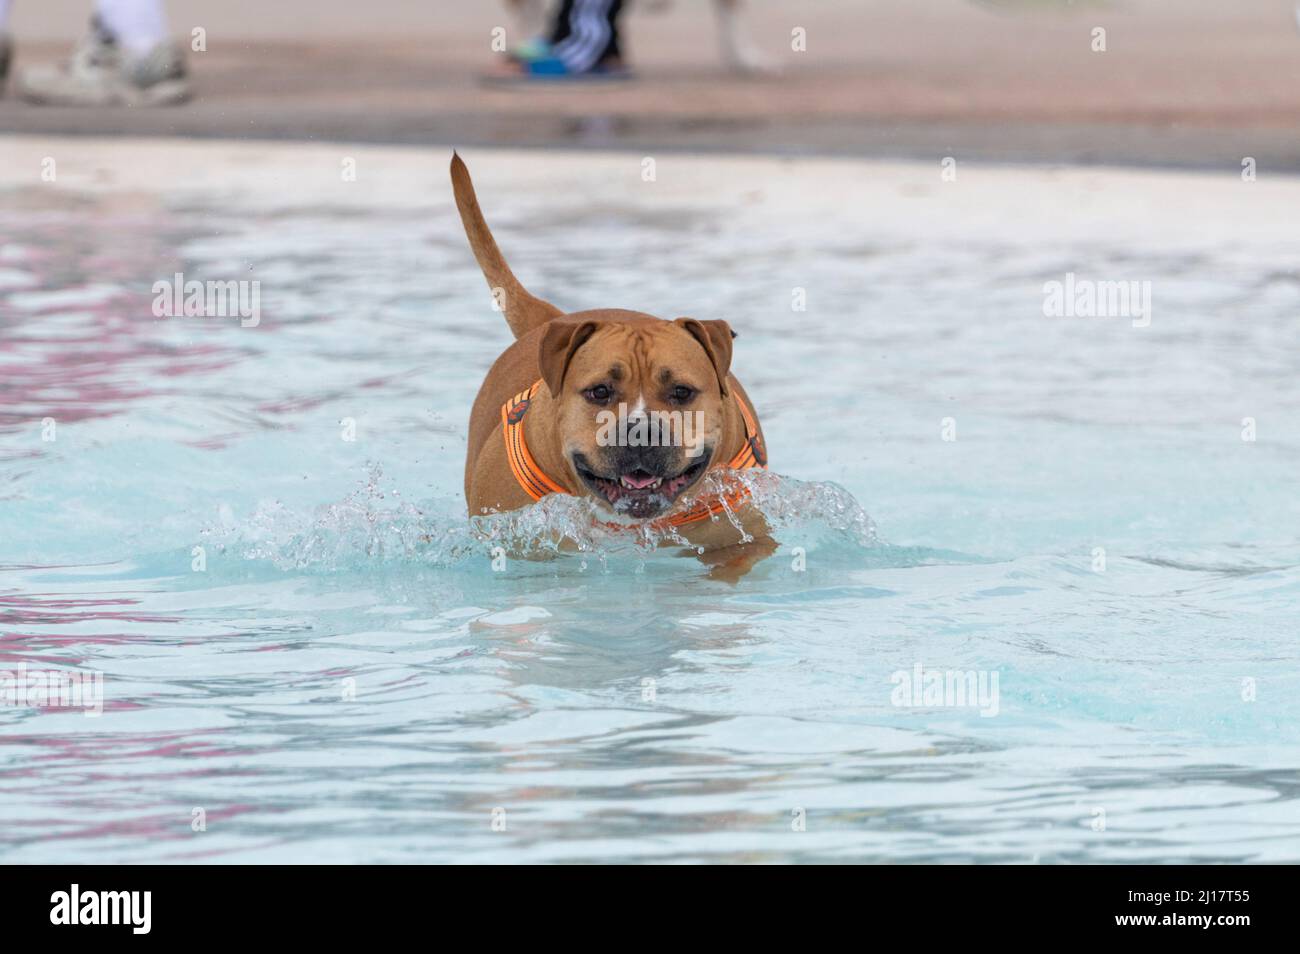 Roter Pitbull in einem Schwimmbad, das durch das Wasser läuft Stockfoto